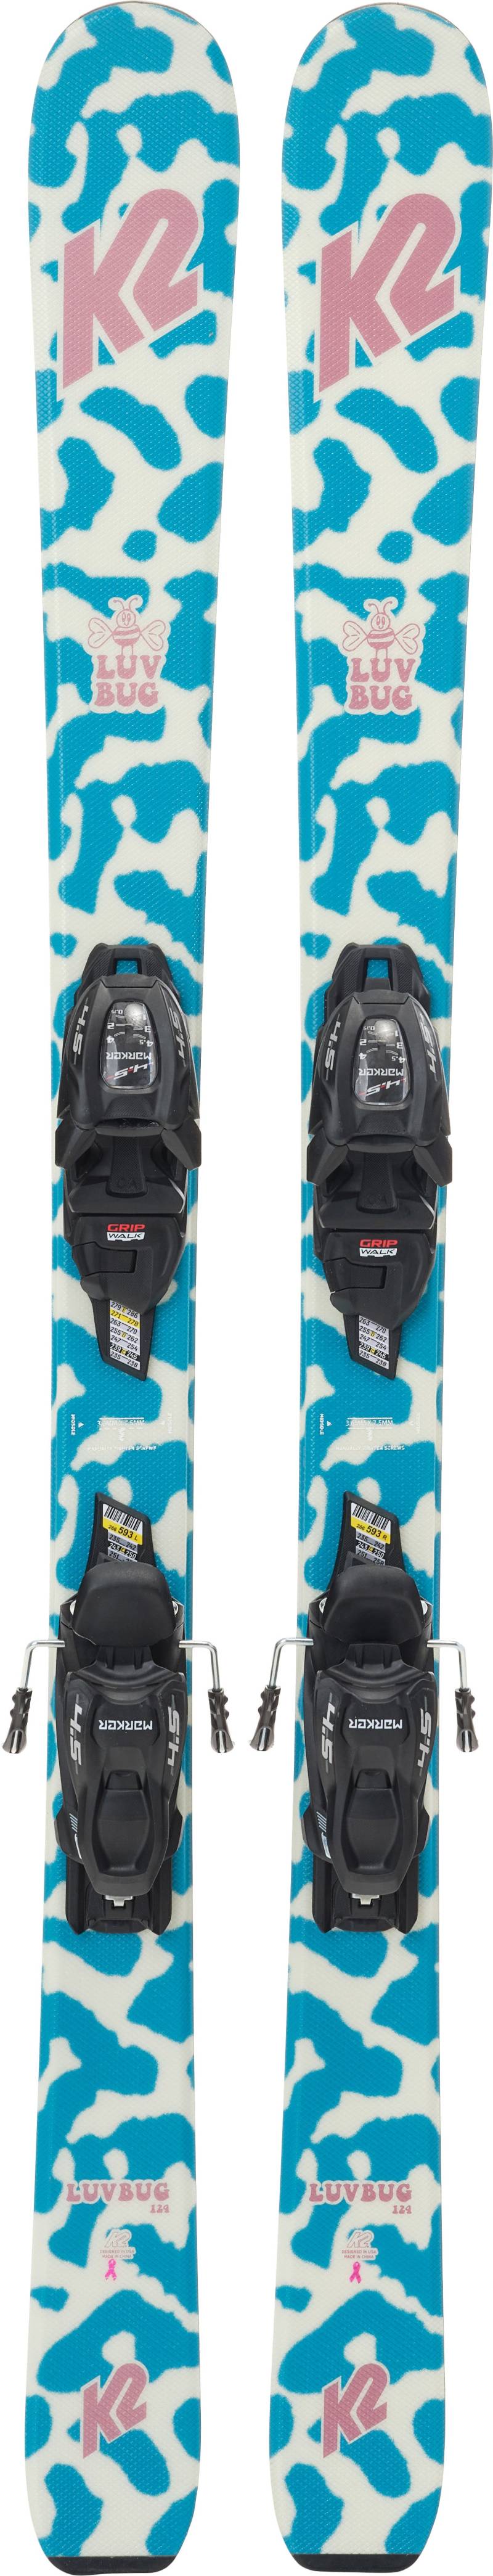 K2 Luv Bug Fdt 7.0 Skier inkl. Bindungen, 136 cm von K2